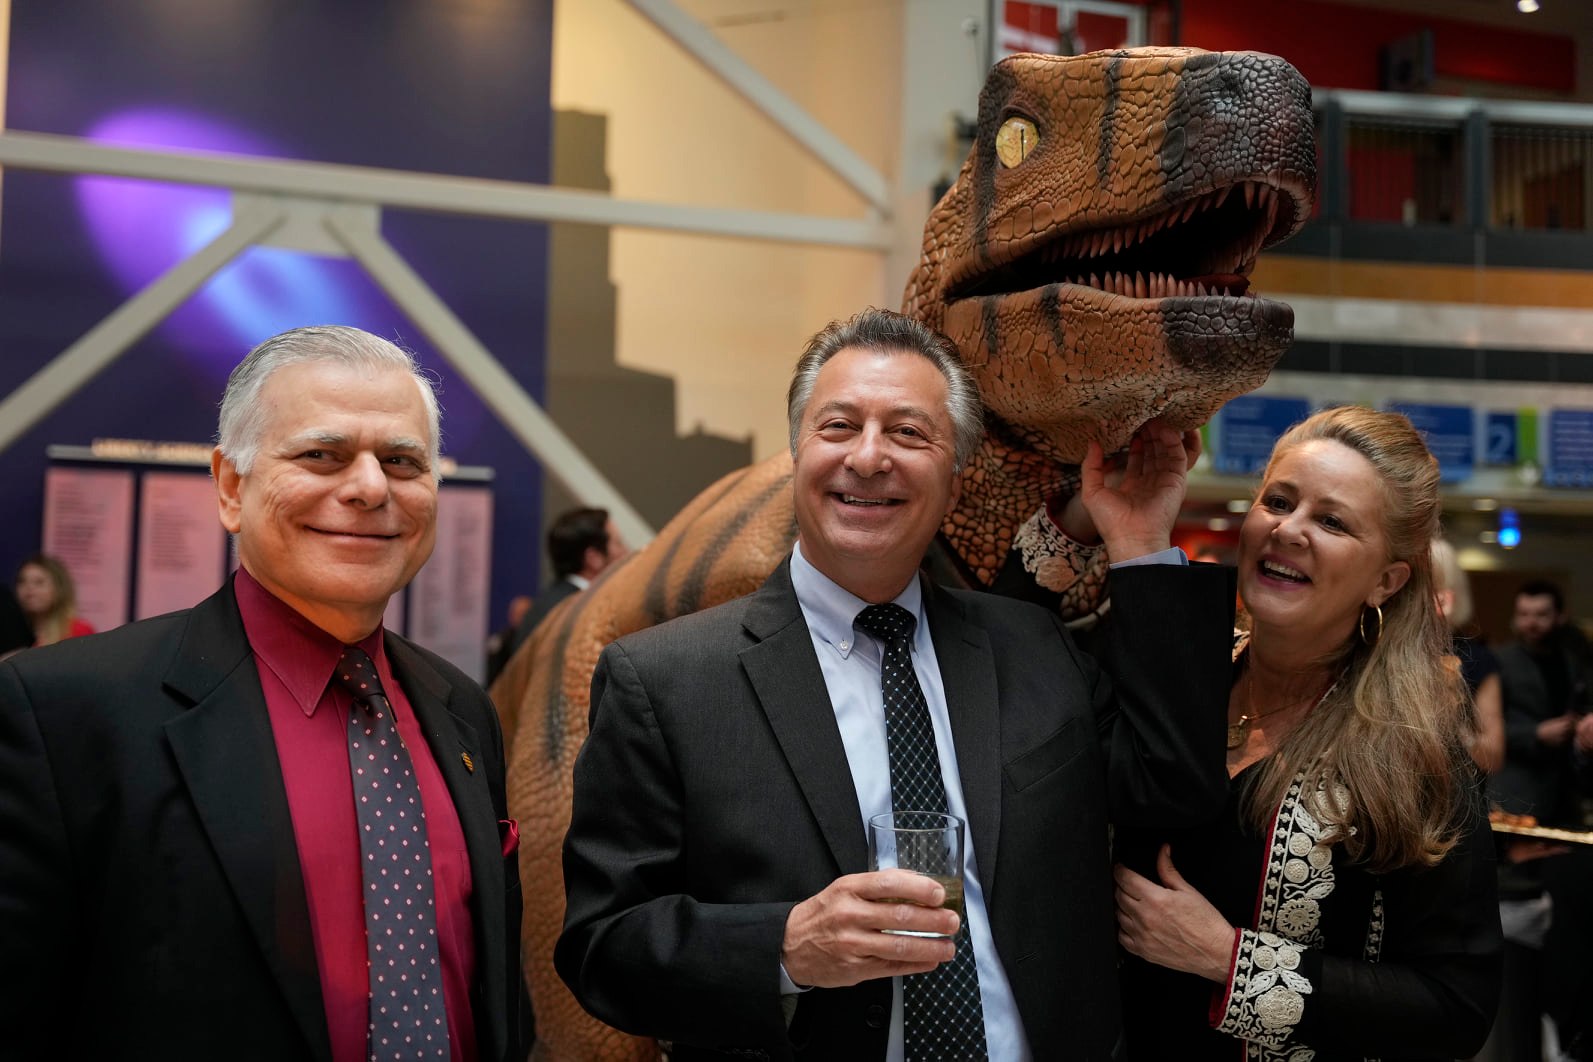 Guests meet a dinosaur